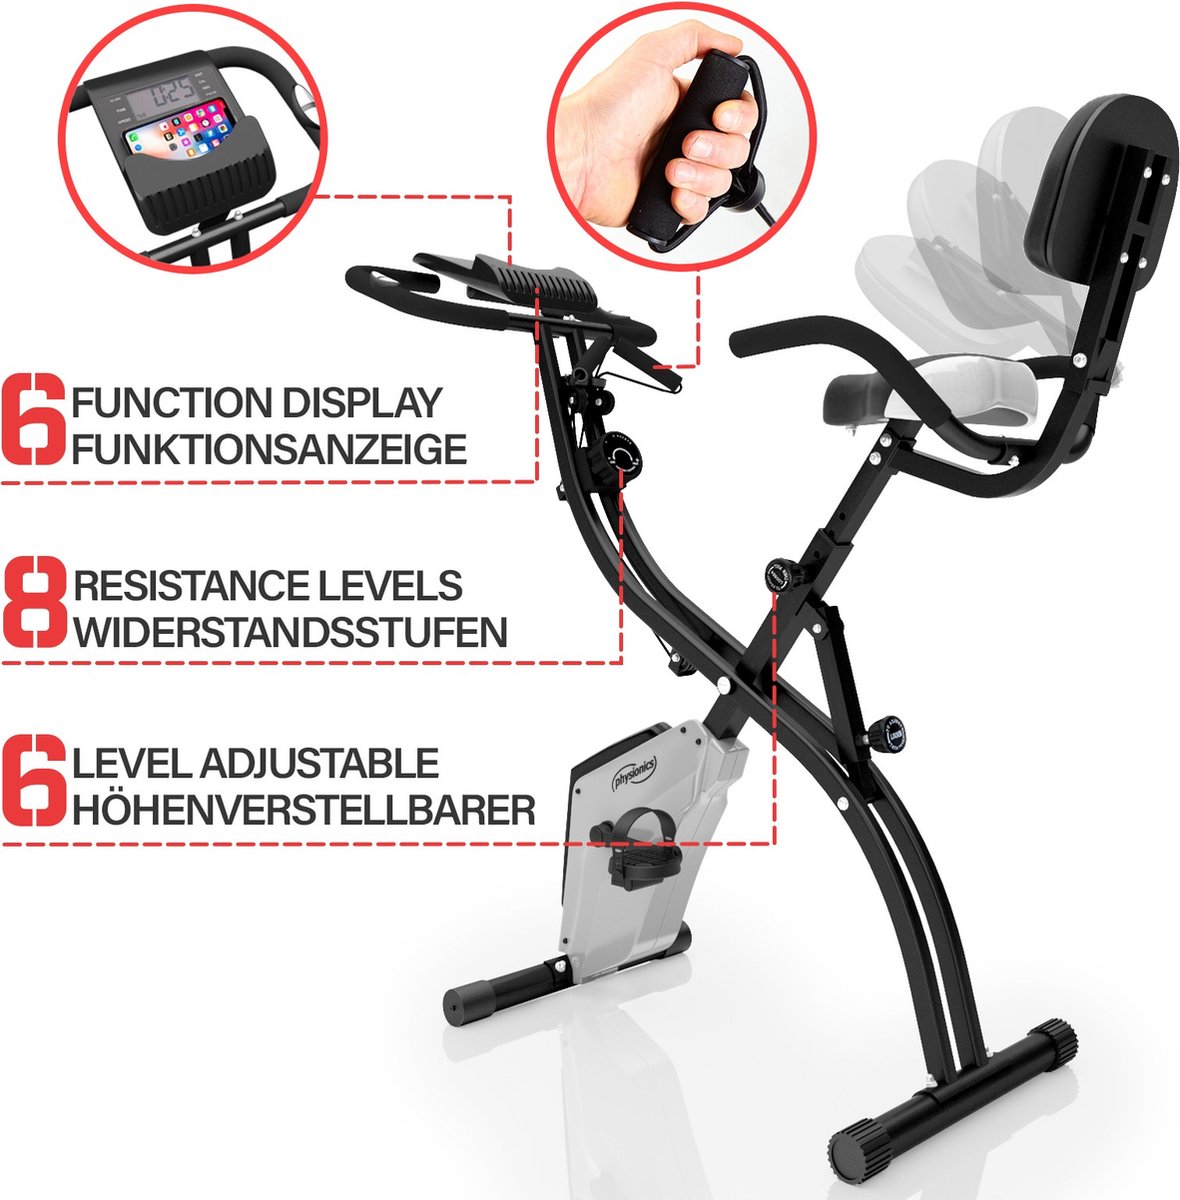 Vélo d'exercice - Affichage/écran LCD - Siège réglable & Résistance  réglable - Capteurs de pouls manuel / de fréquence cardiaque - Ergomètre